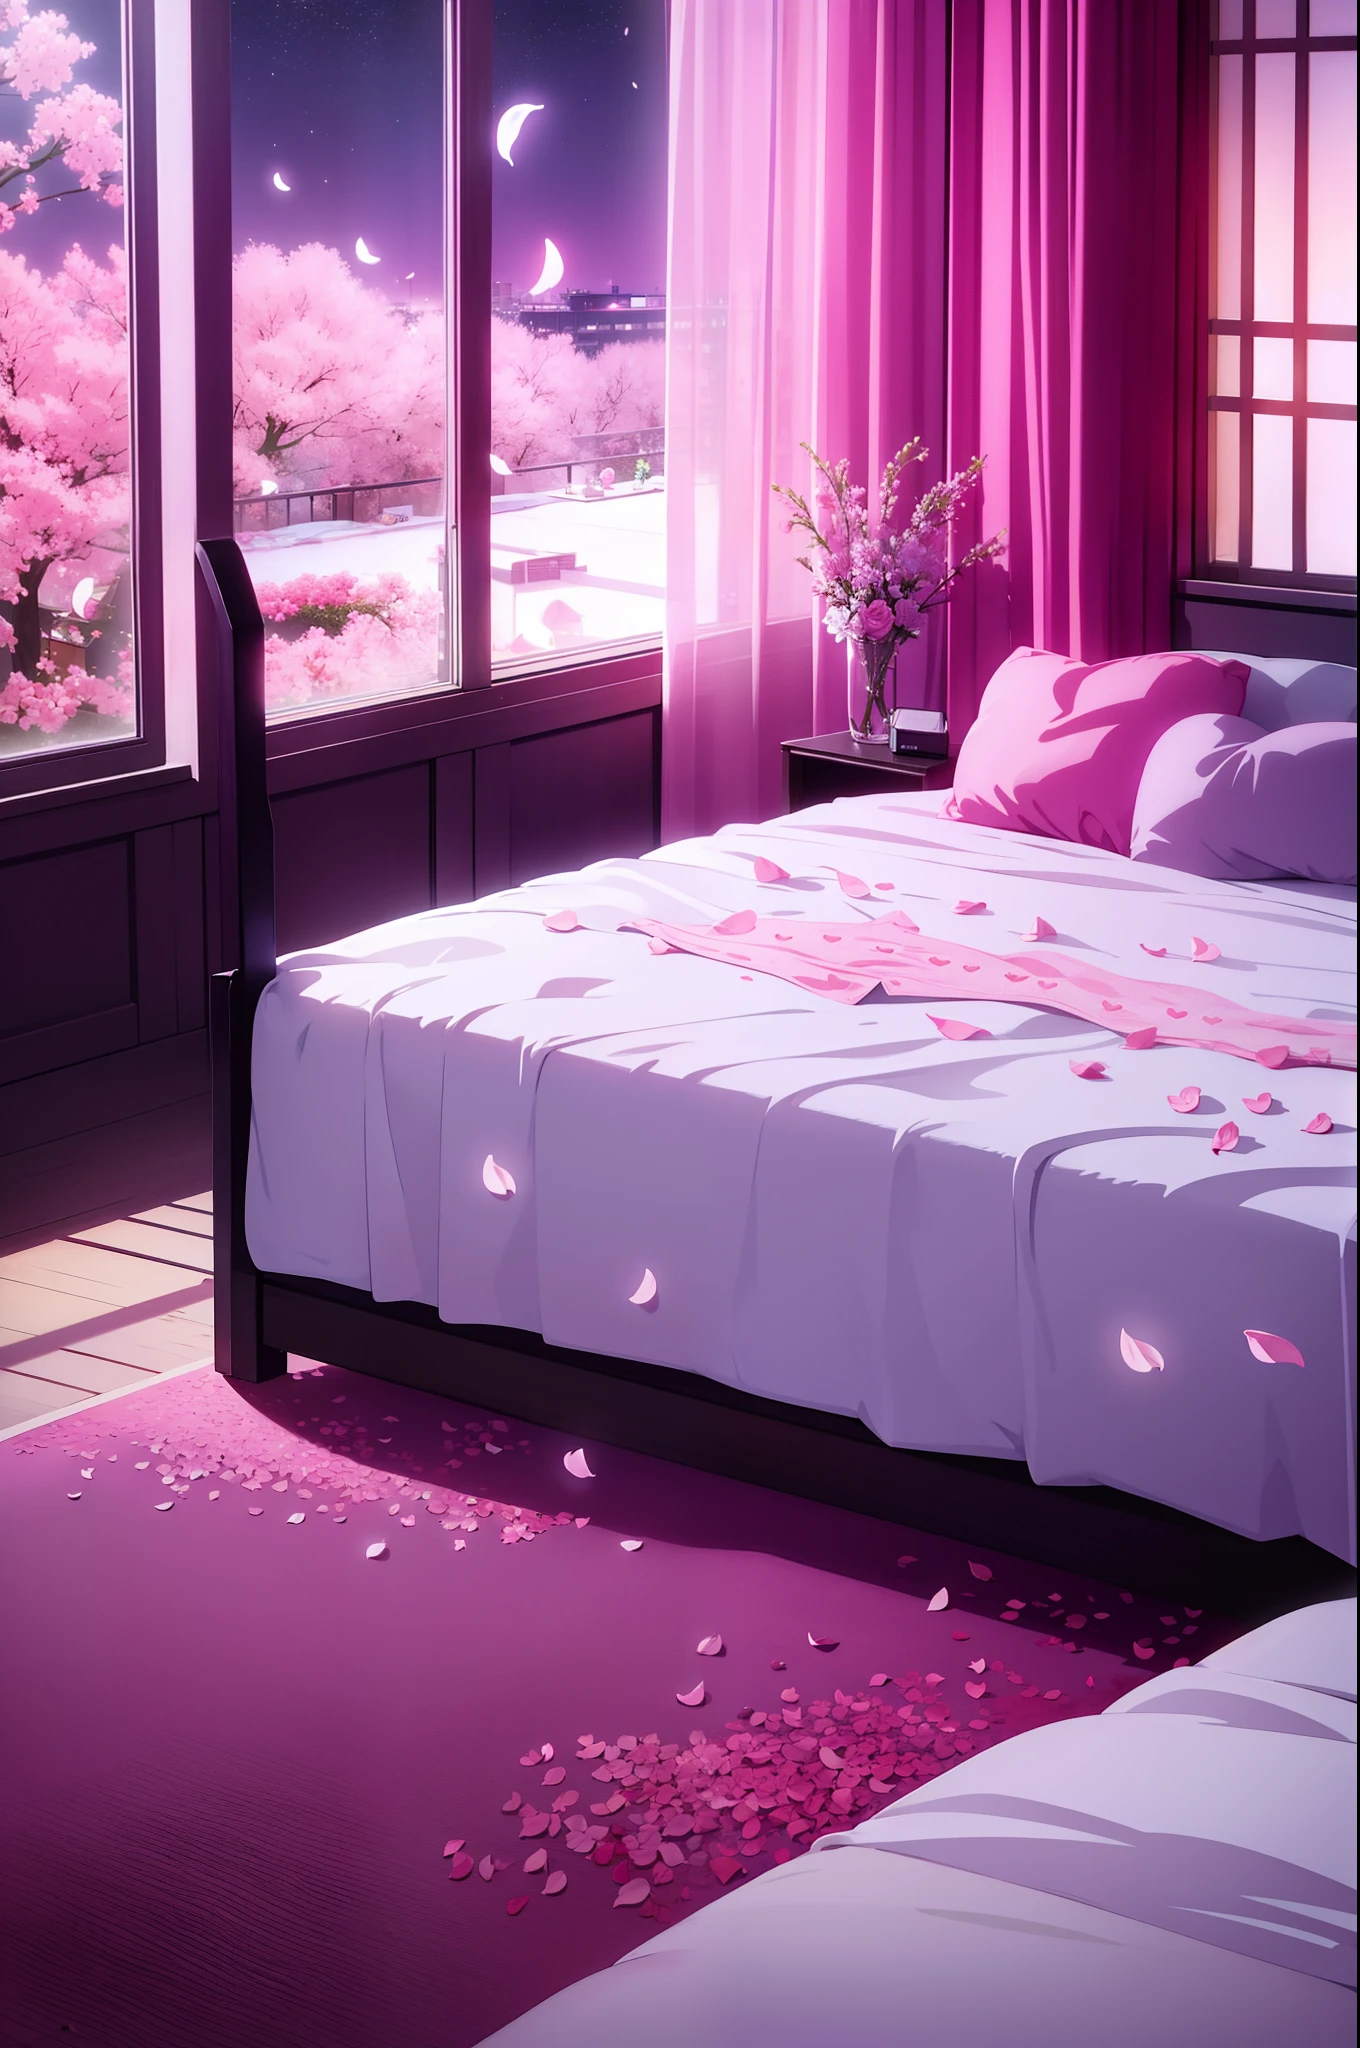 ทิวทัศน์ของห้องพักอันเย้ายวนพร้อมกลีบดอกไม้ที่กระจัดกระจายบนเตียง, เตียงรูปหัวใจ, ท้องฟ้ายามค่ําคืนบนหน้าต่าง, แสงสีชมพู, รักโรงแรม, กระสอบถุงยางอนามัย, เตียงเปียก